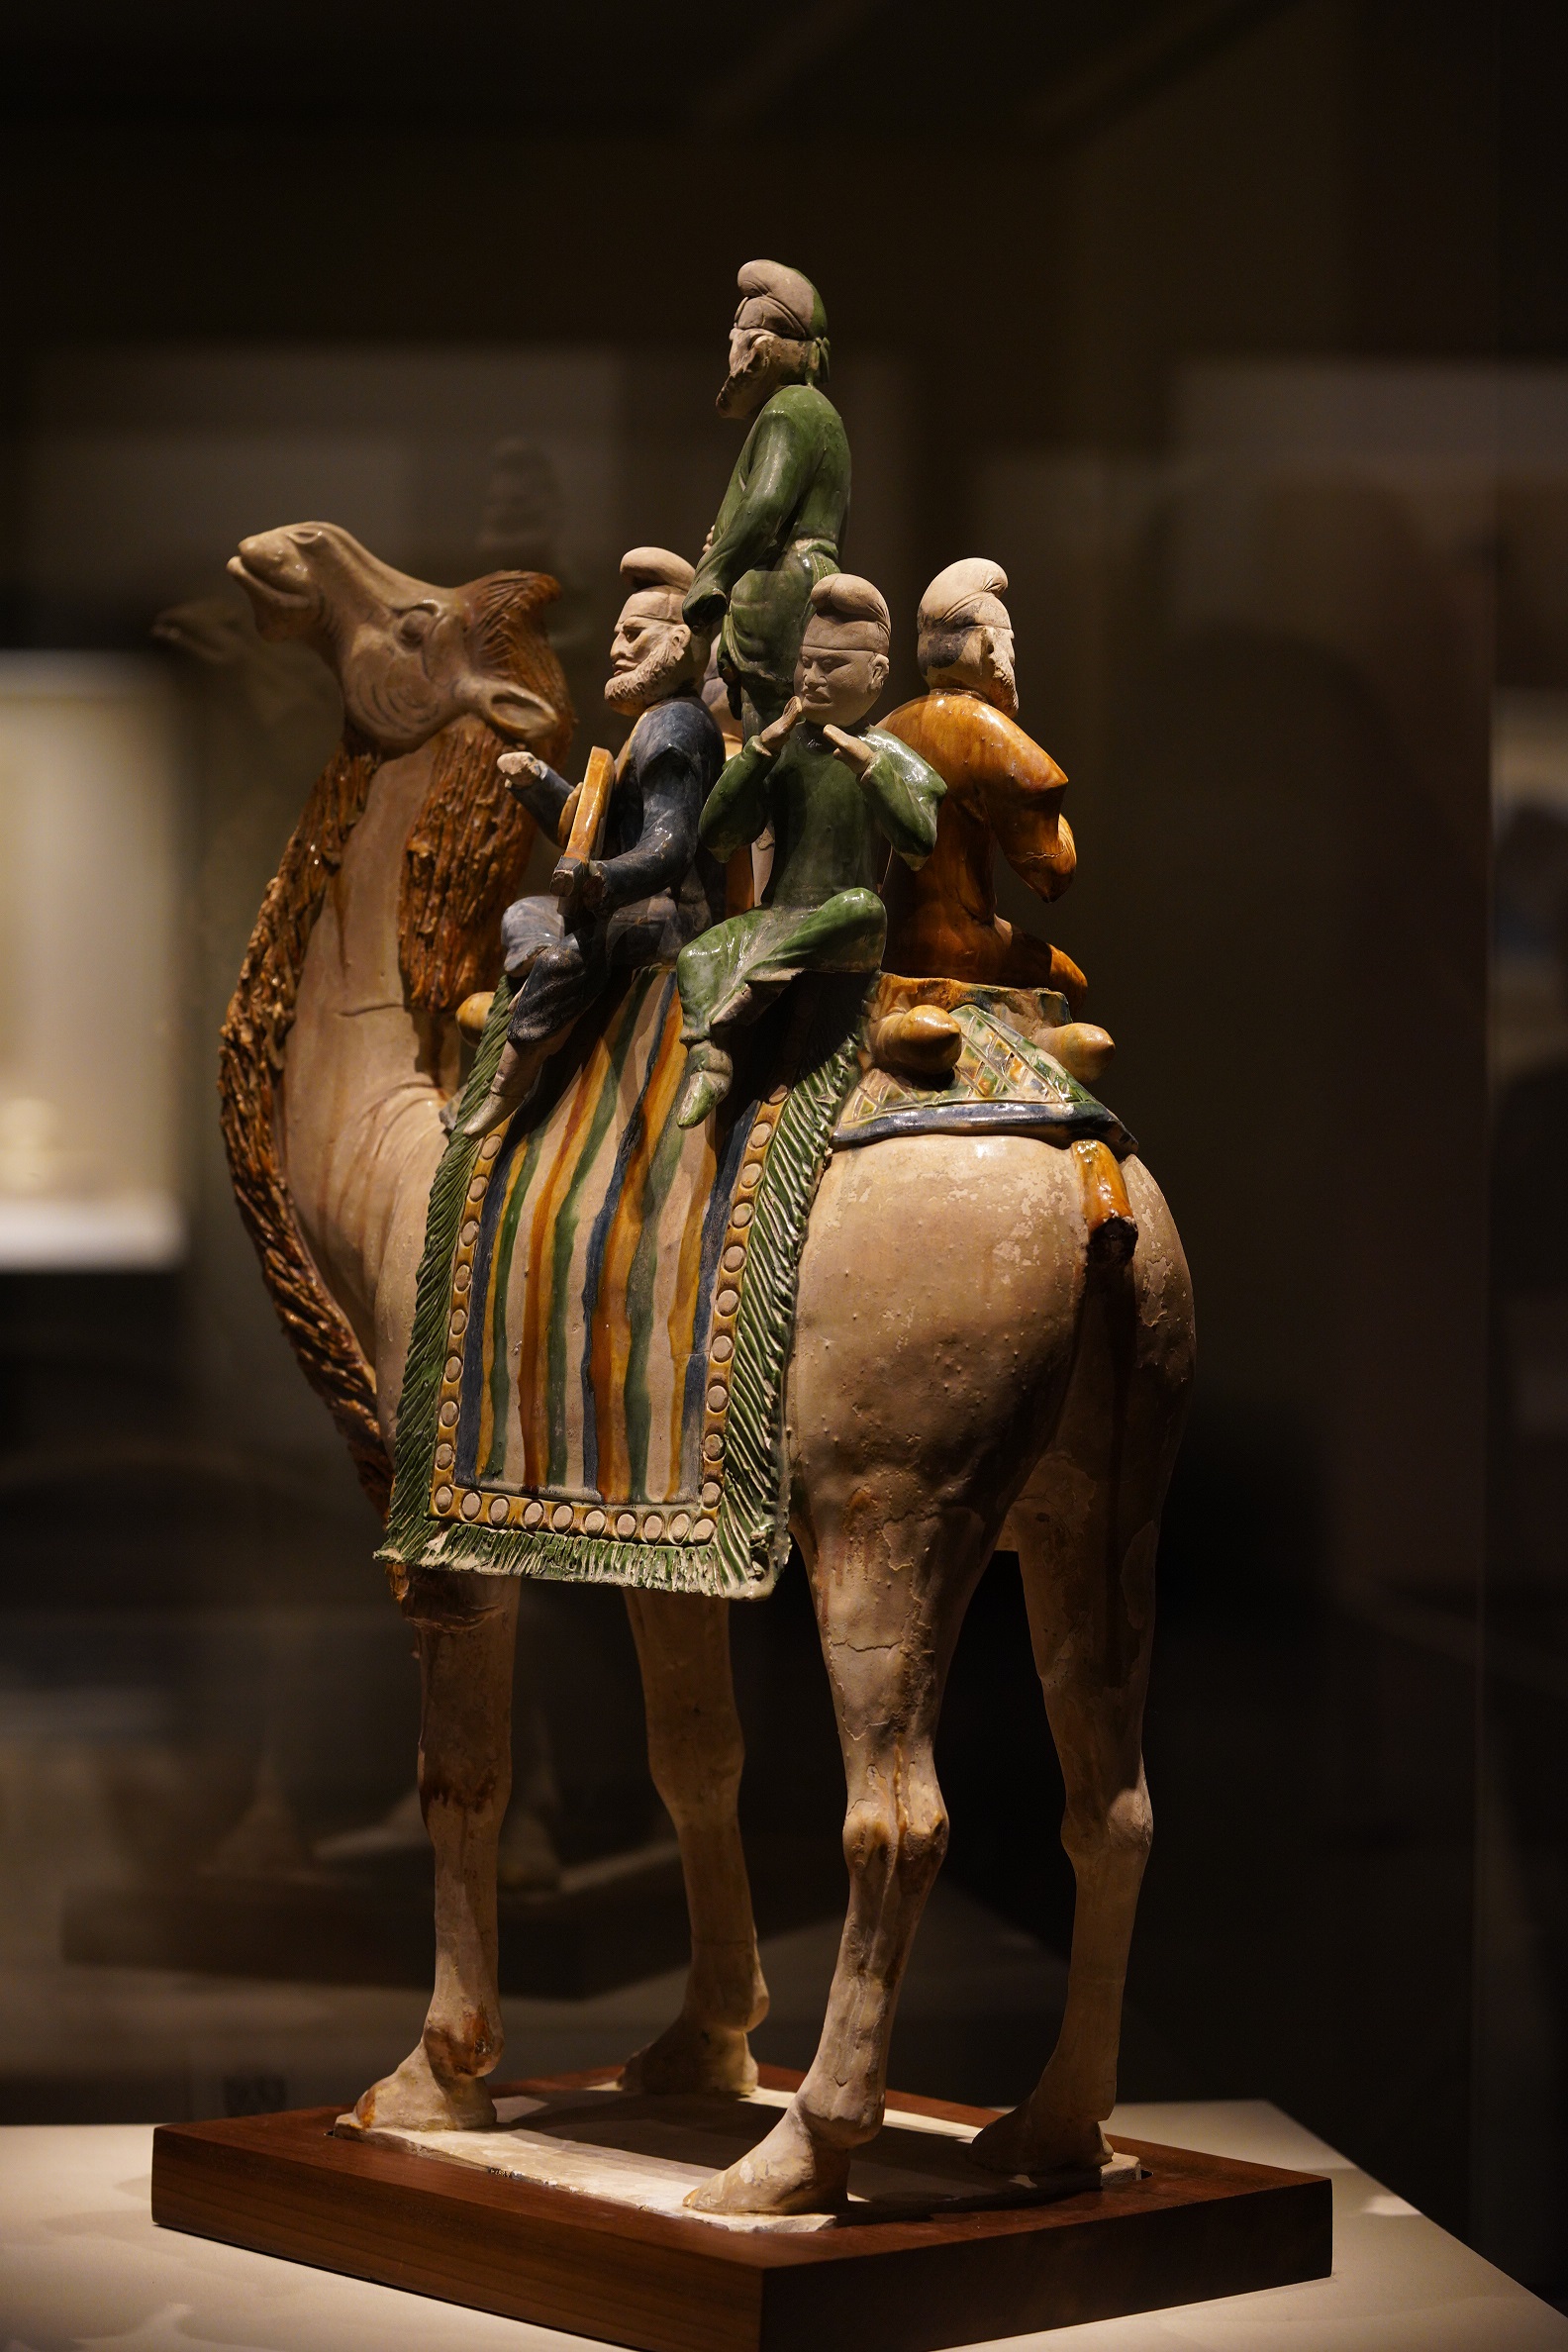 三彩釉陶駱駝載楽俑-唐時代-中国国家博物馆収蔵